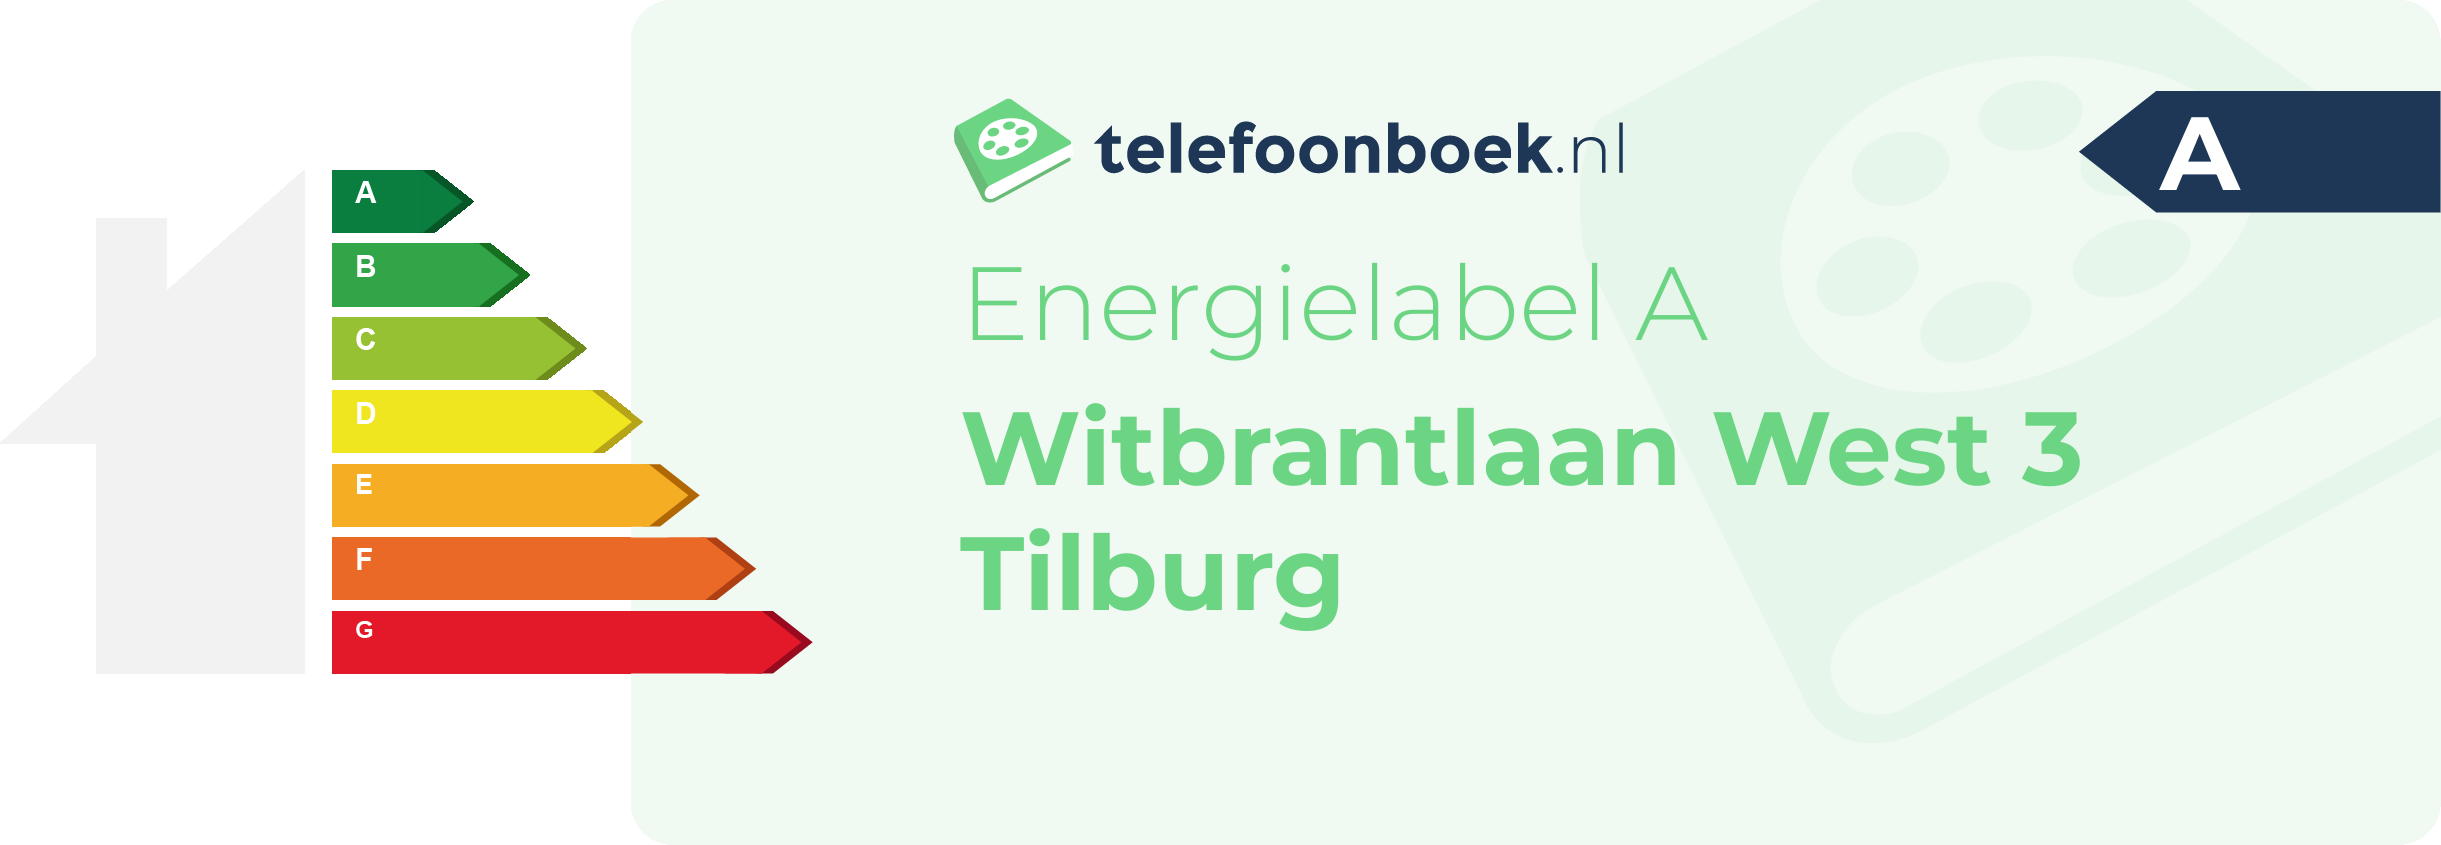 Energielabel Witbrantlaan West 3 Tilburg